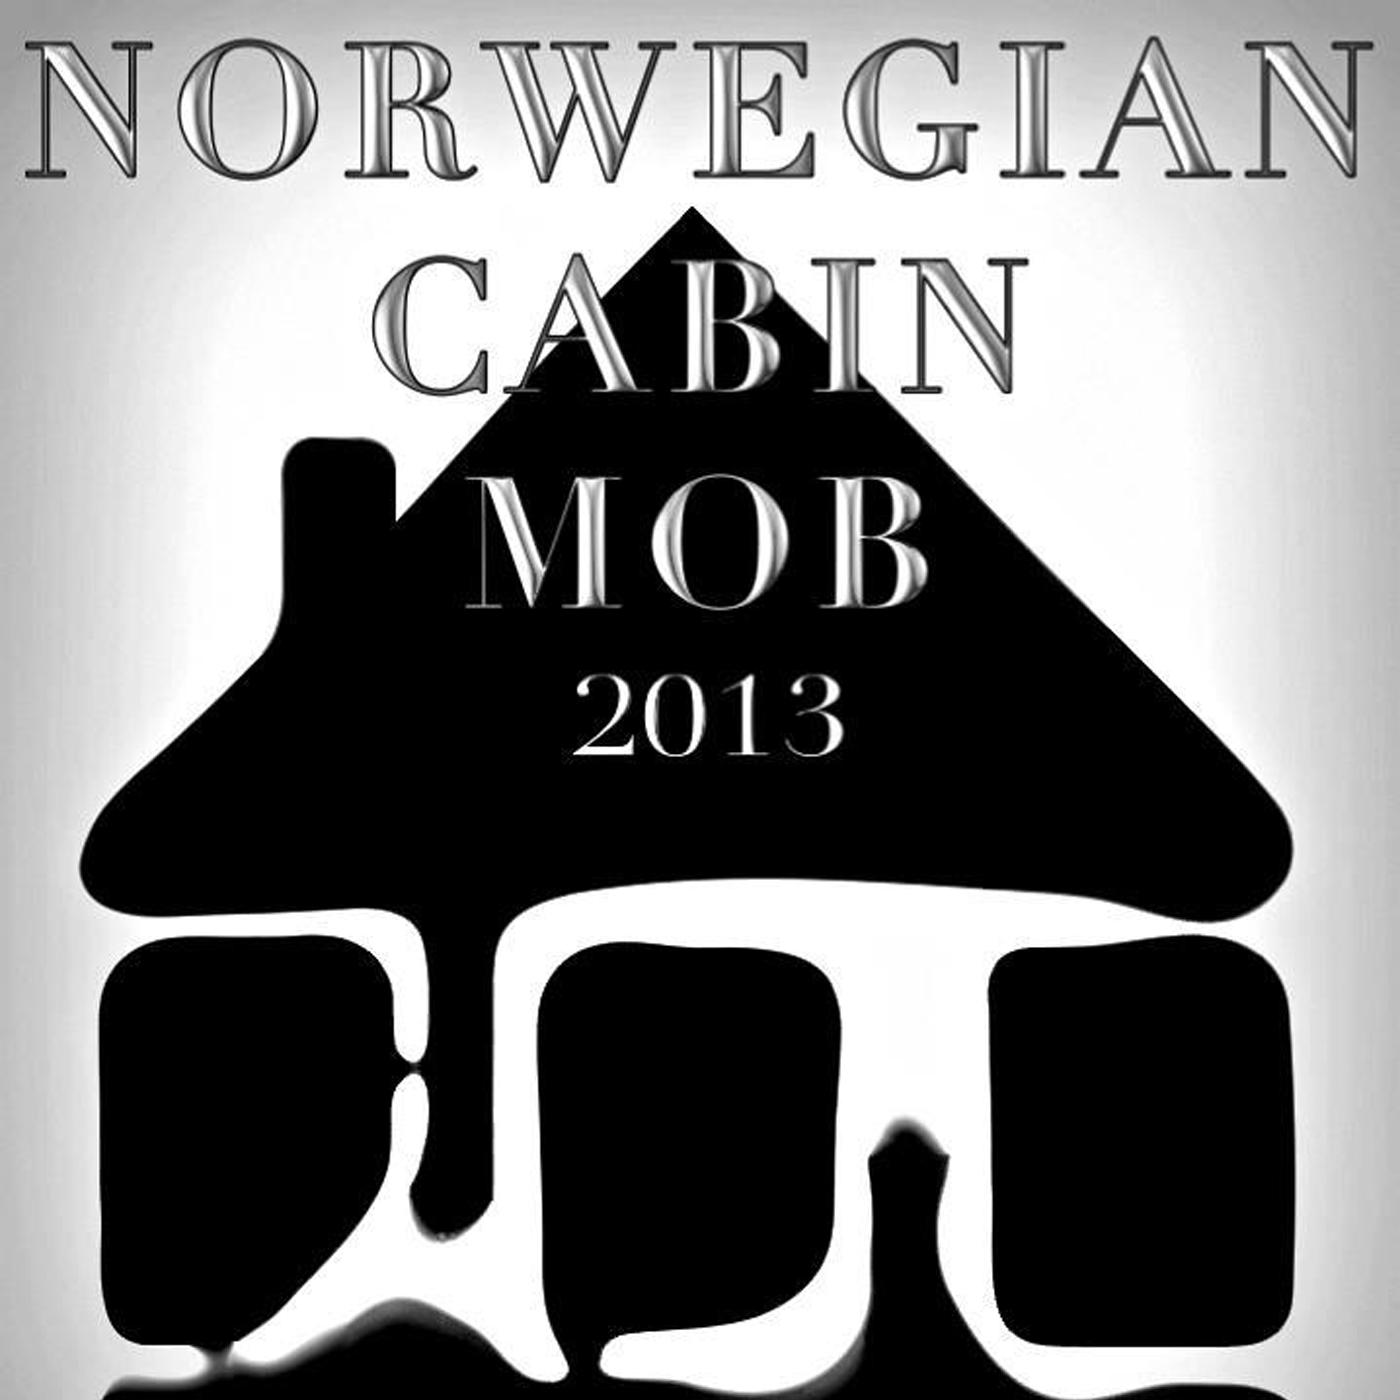 Norwegian Cabin Mob 2013